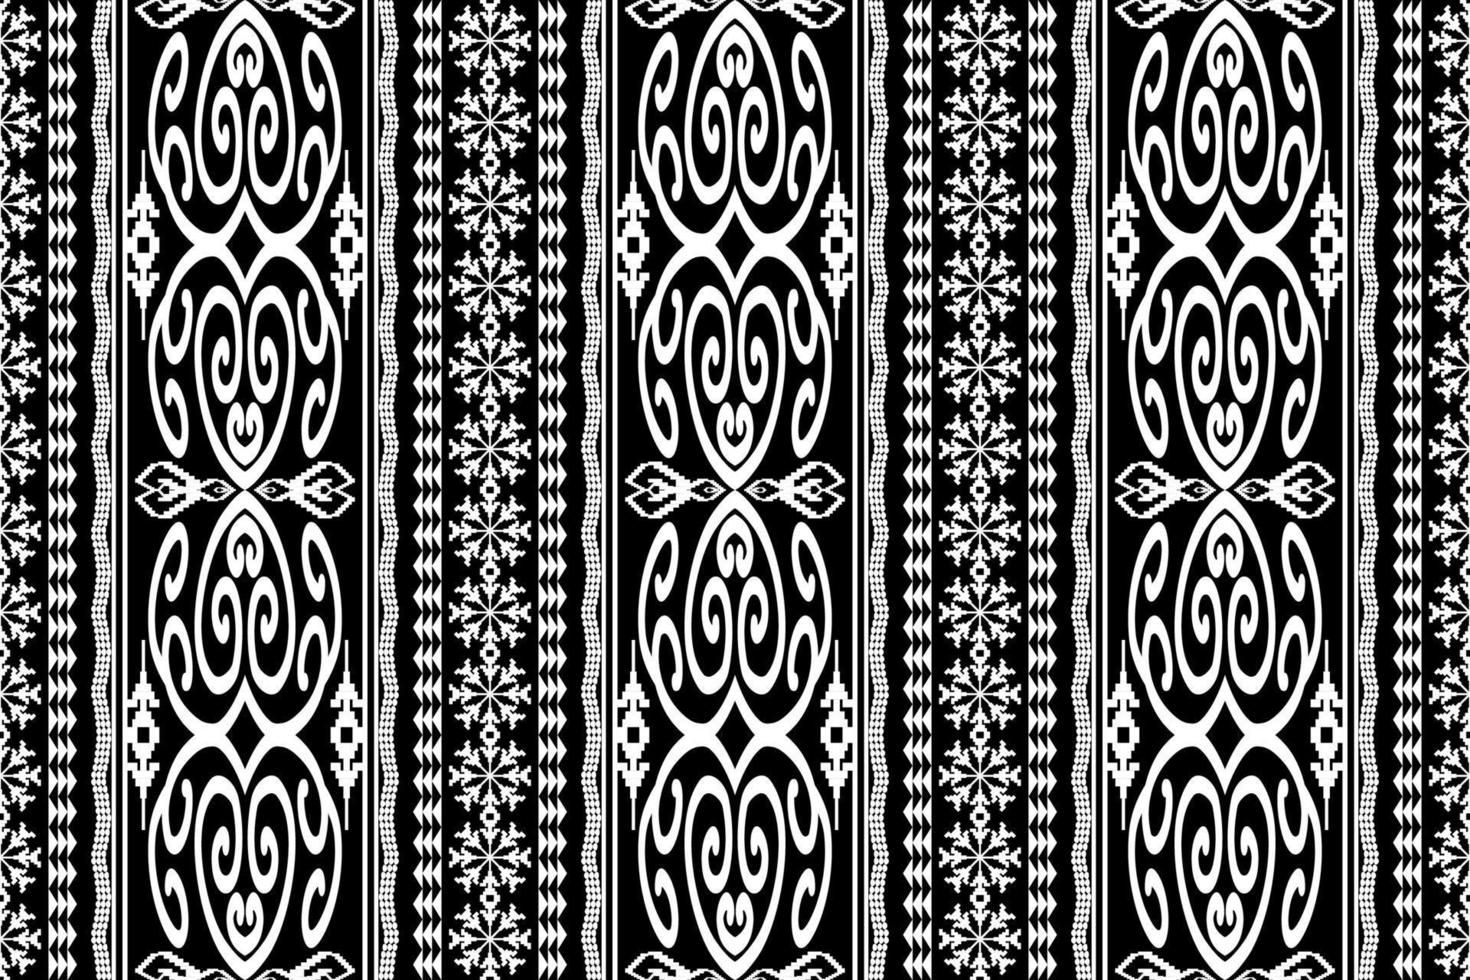 geometrische ethnische orientalische traditionelle pattern.figur stammesstickerei style.design für tapete, kleidung, verpackung, stoff, vektorillustration vektor